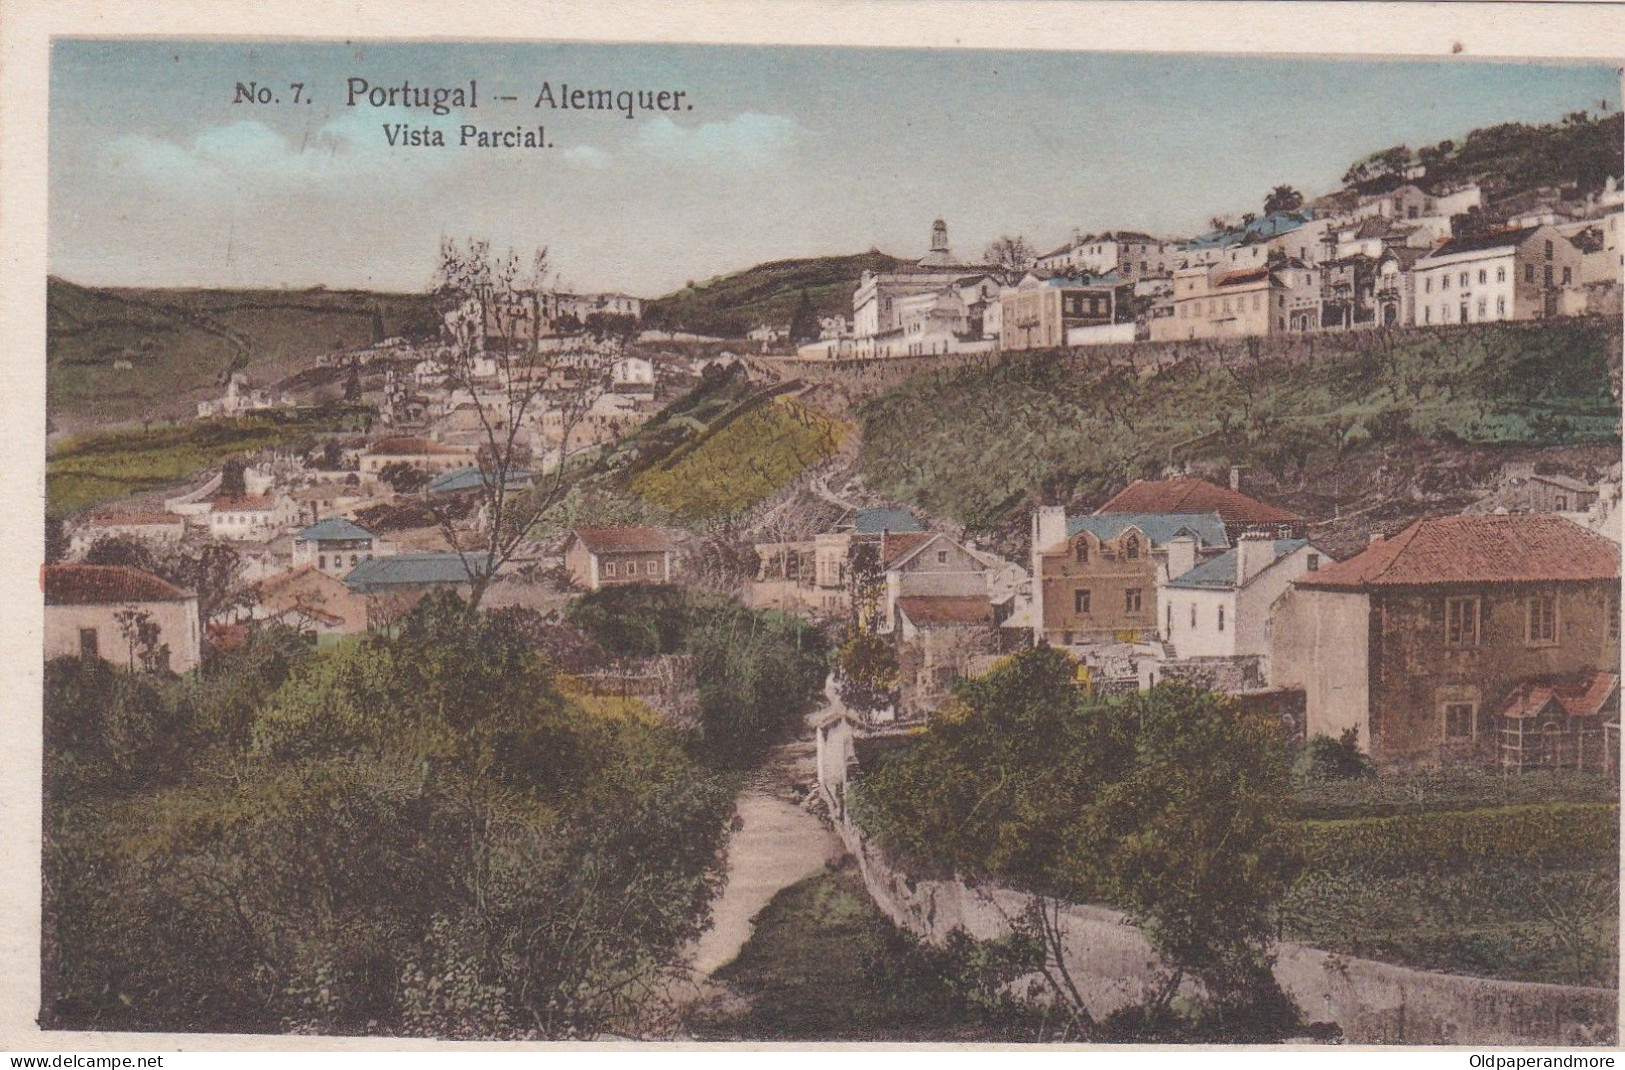 POSTCARD PORTUGAL - ALENQUER - VISTA PARCIAL - Lisboa